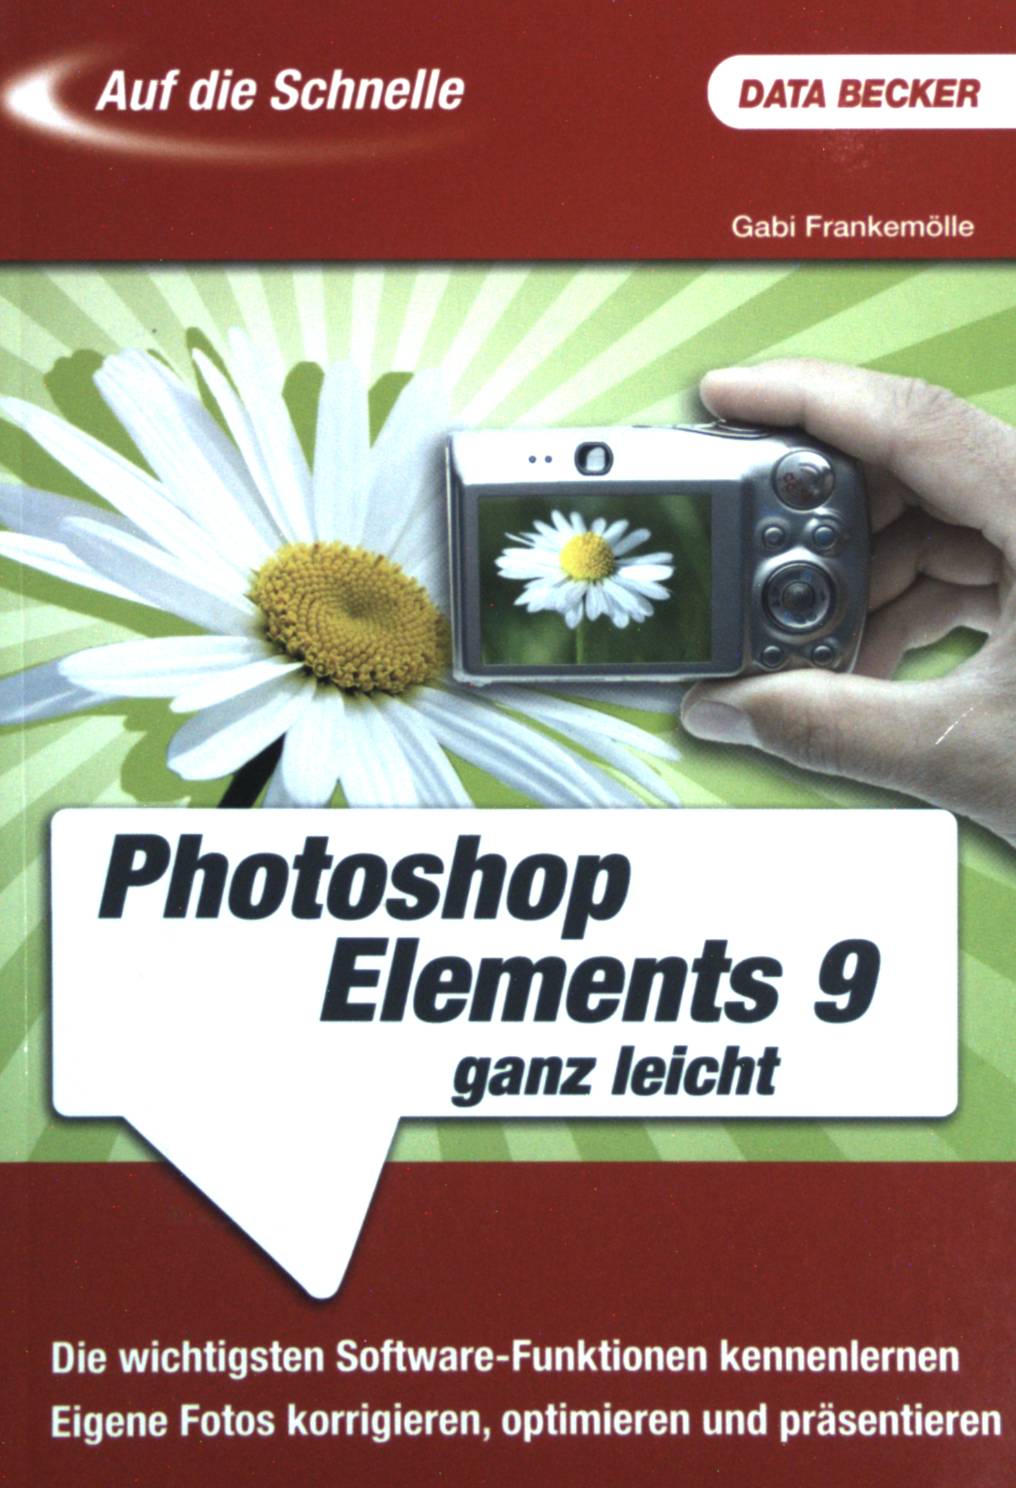 Adobe Photoshop Elements 9 ganz leicht : [die wichtigsten Software-Funktionen kennenlernen ; eigene Fotos korrigieren, optimieren und präsentieren]. Auf die Schnelle. - Frankemölle, Gabi